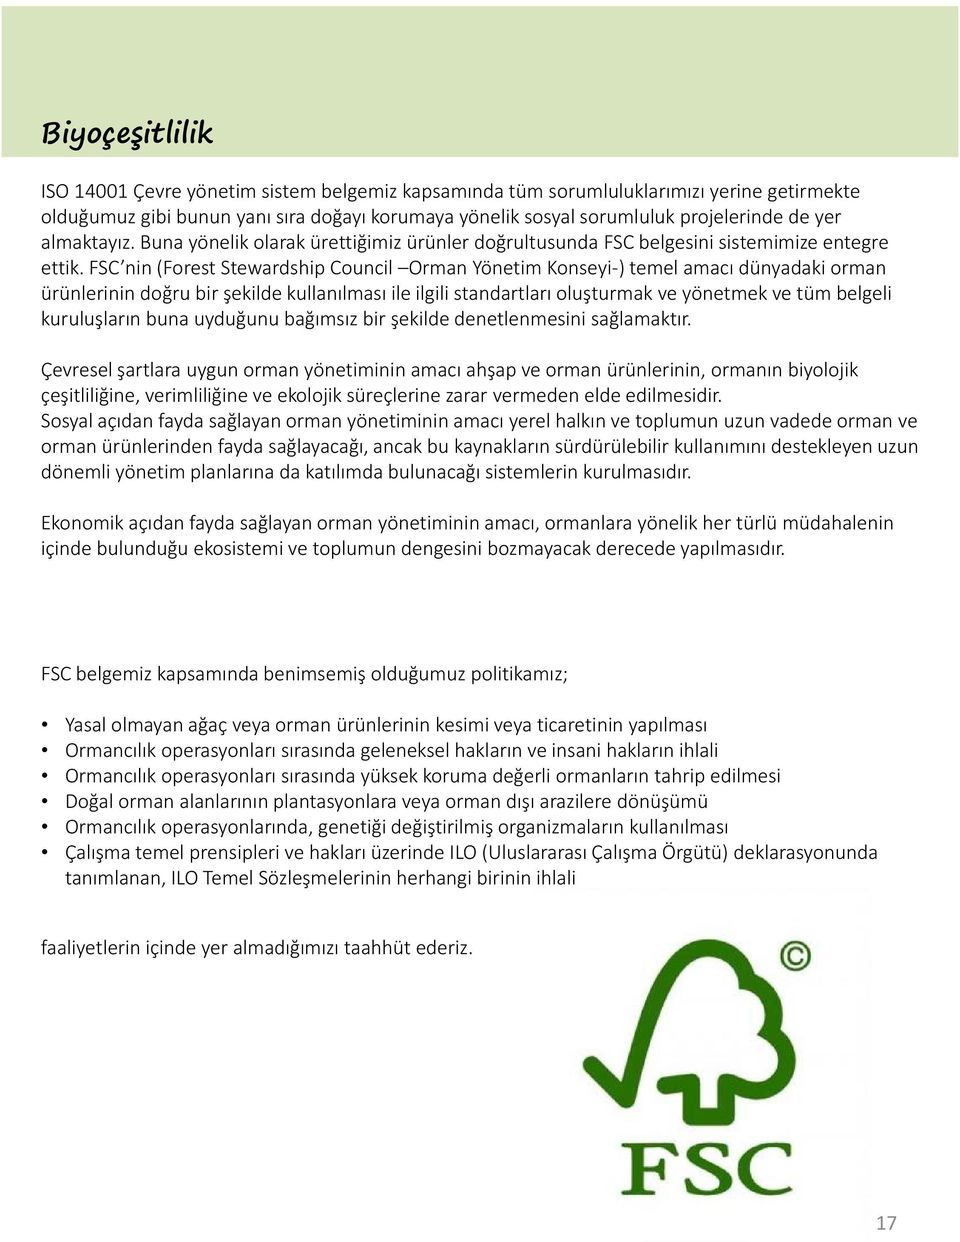 FSC nin (Forest Stewardship Council Orman Yönetim Konseyi-) temel amacı dünyadaki orman ürünlerinin doğru bir şekilde kullanılması ile ilgili standartları oluşturmak ve yönetmek ve tüm belgeli